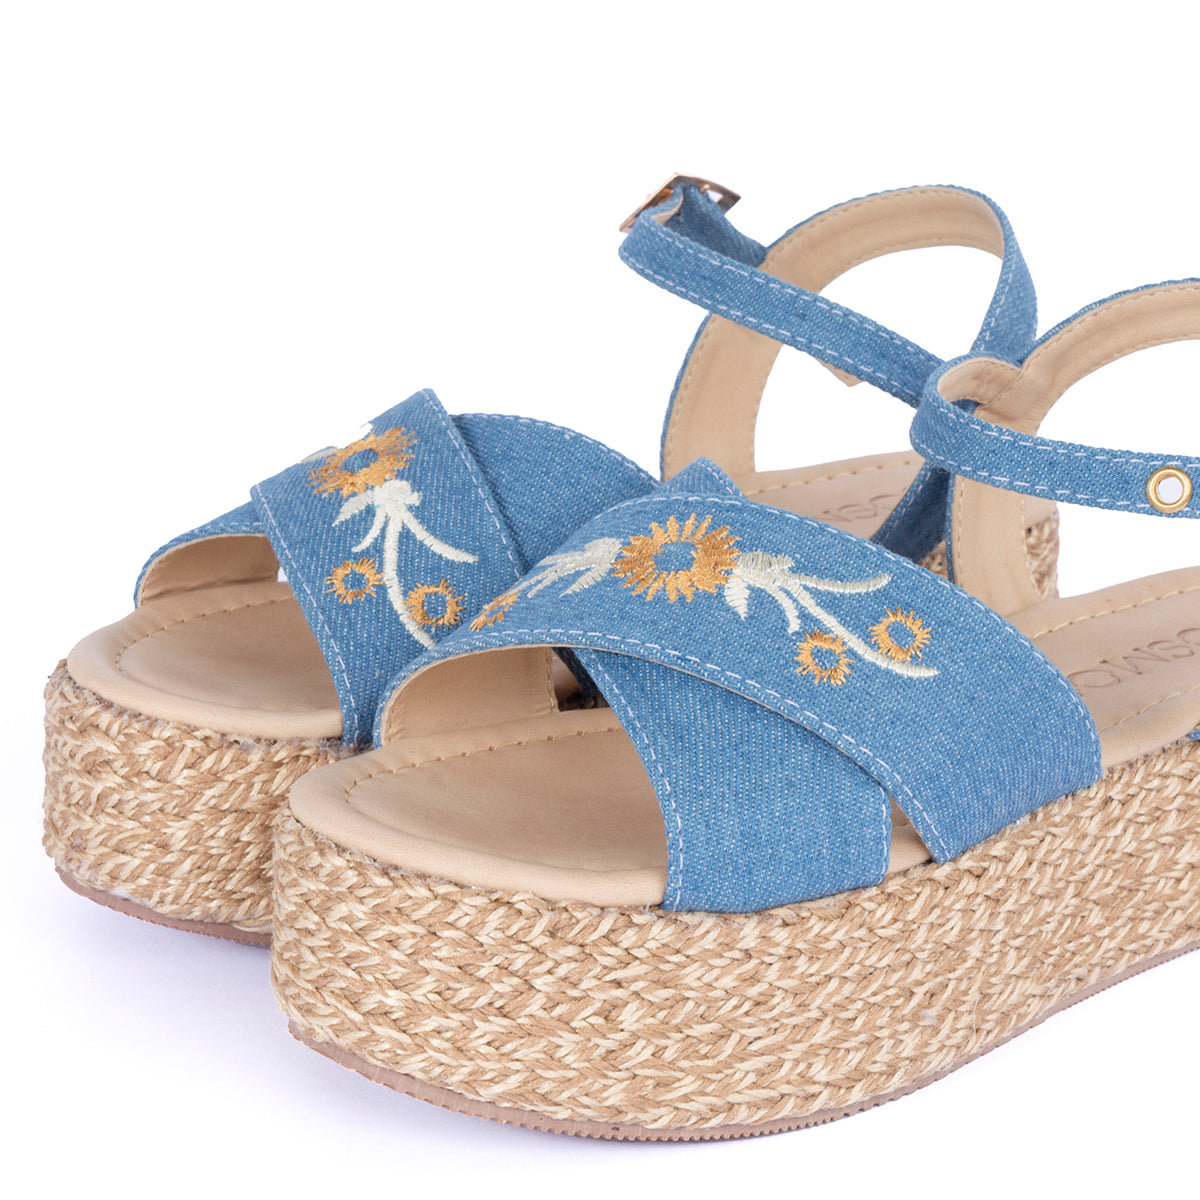 Sandalias color azul con capellada textil, empeine con bordado y suela en yute